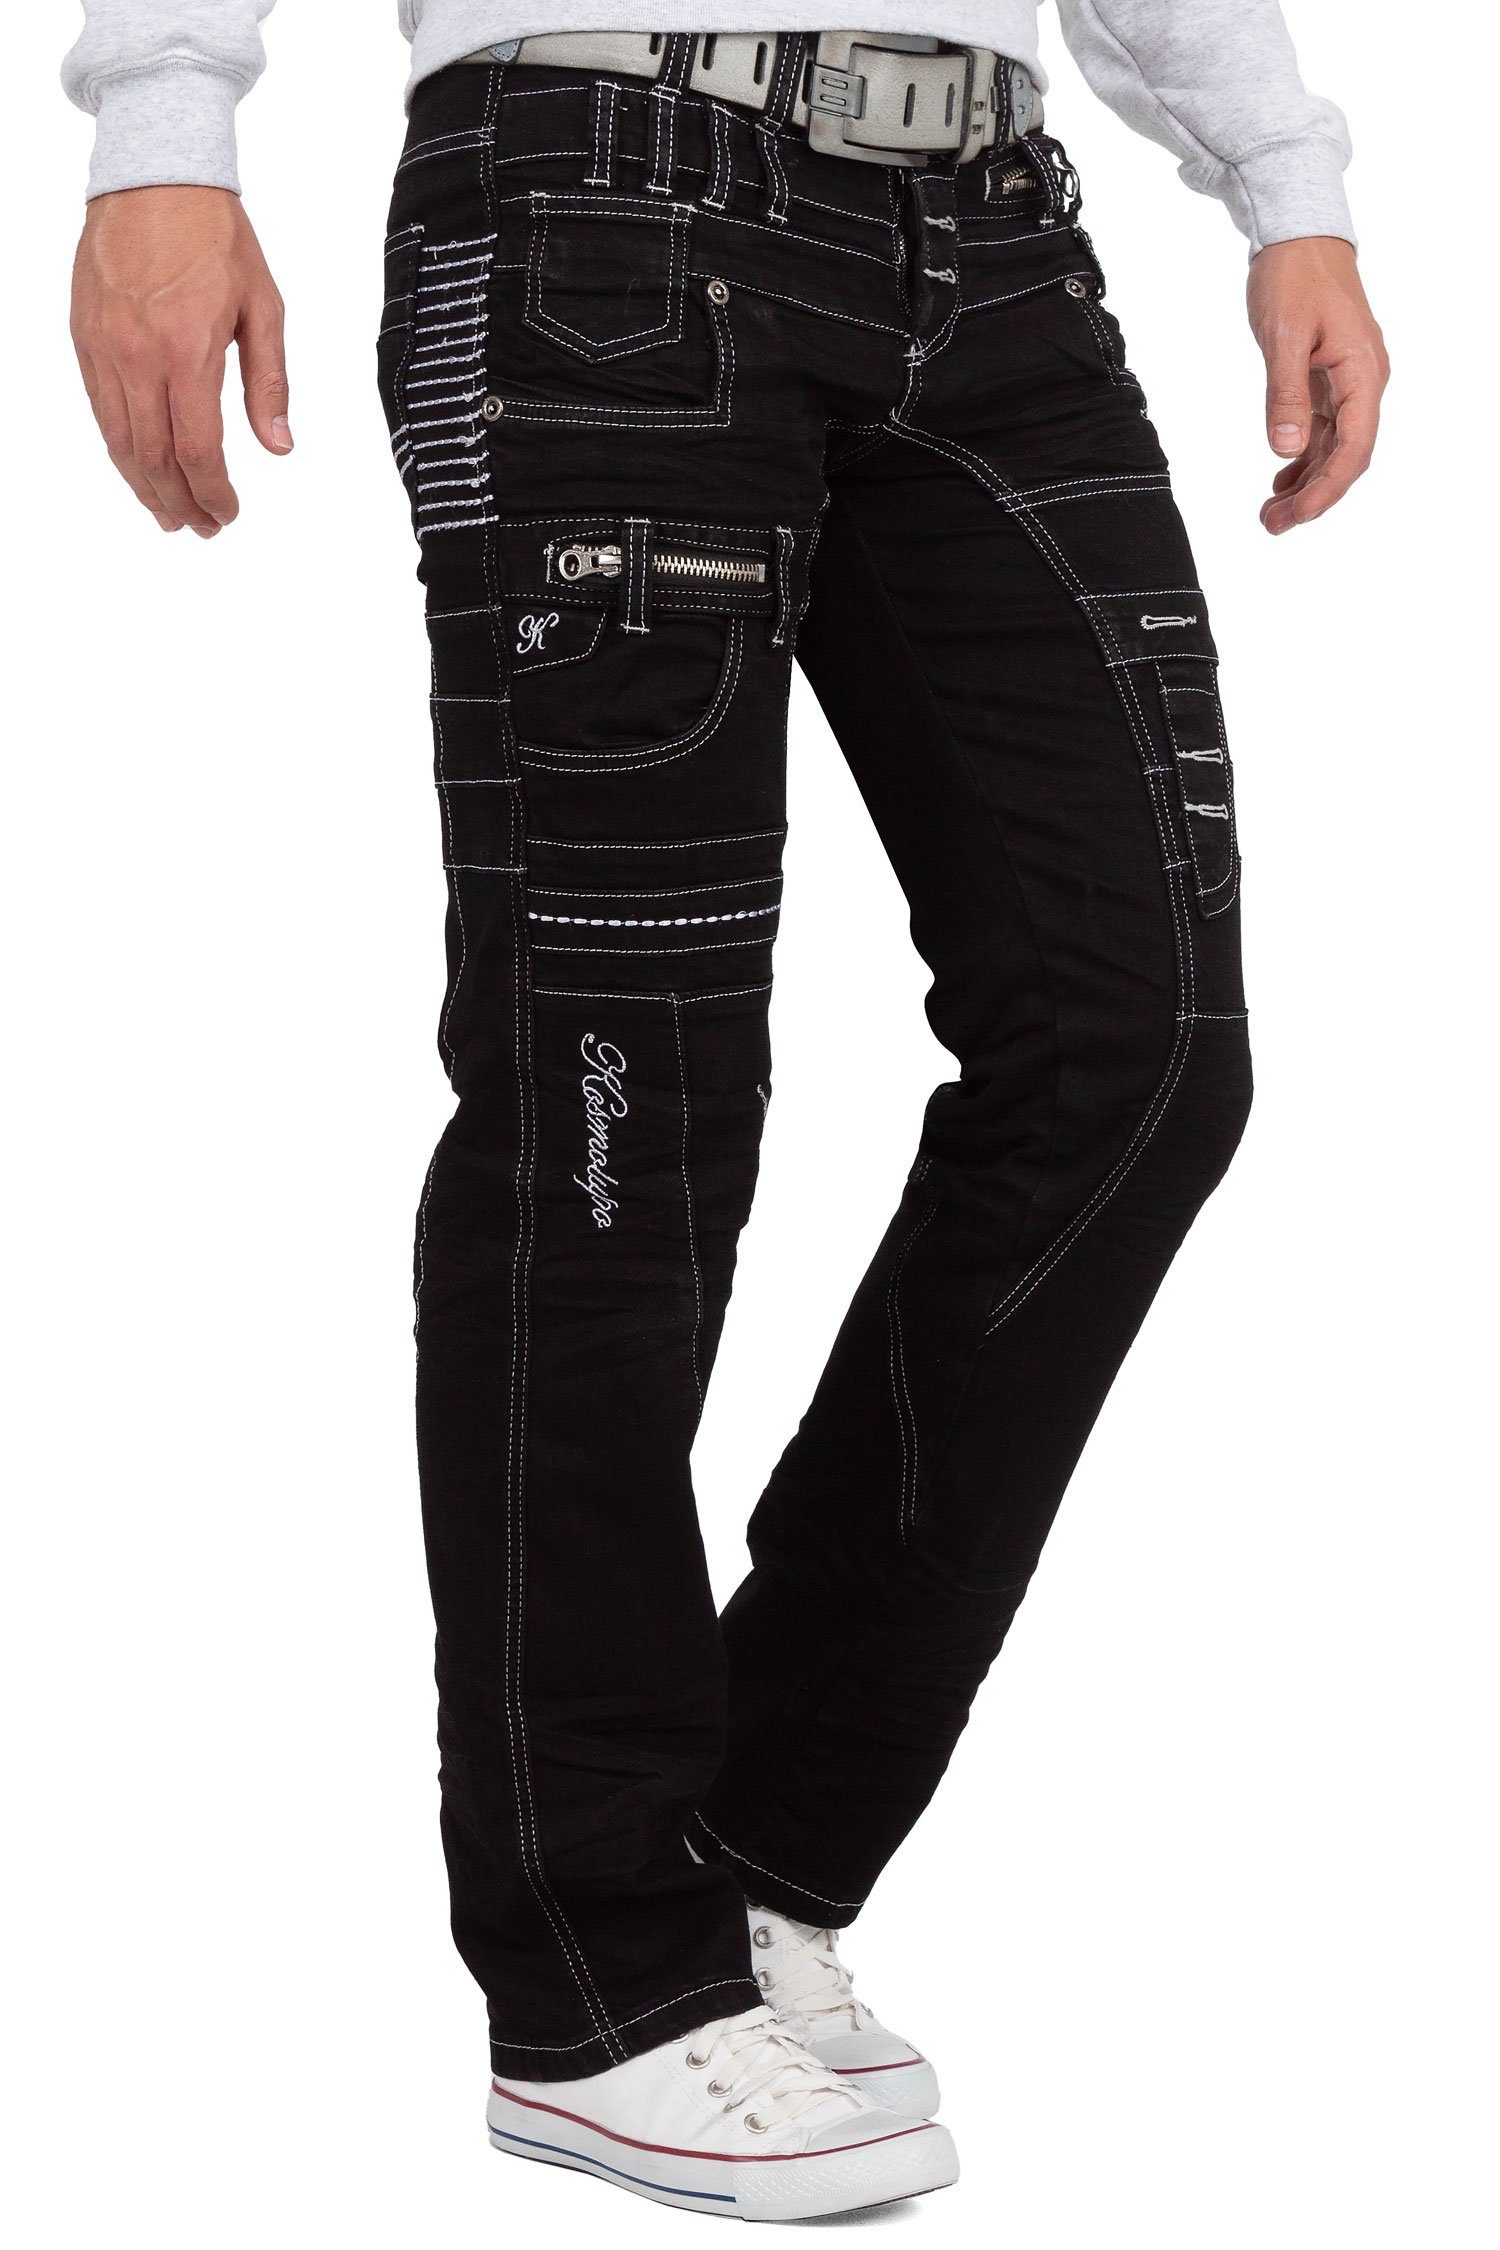 Kosmo Lupo 5-Pocket-Jeans Auffällige Herren Applikationen BA-KM020-1 Hose aufgesetzten mit